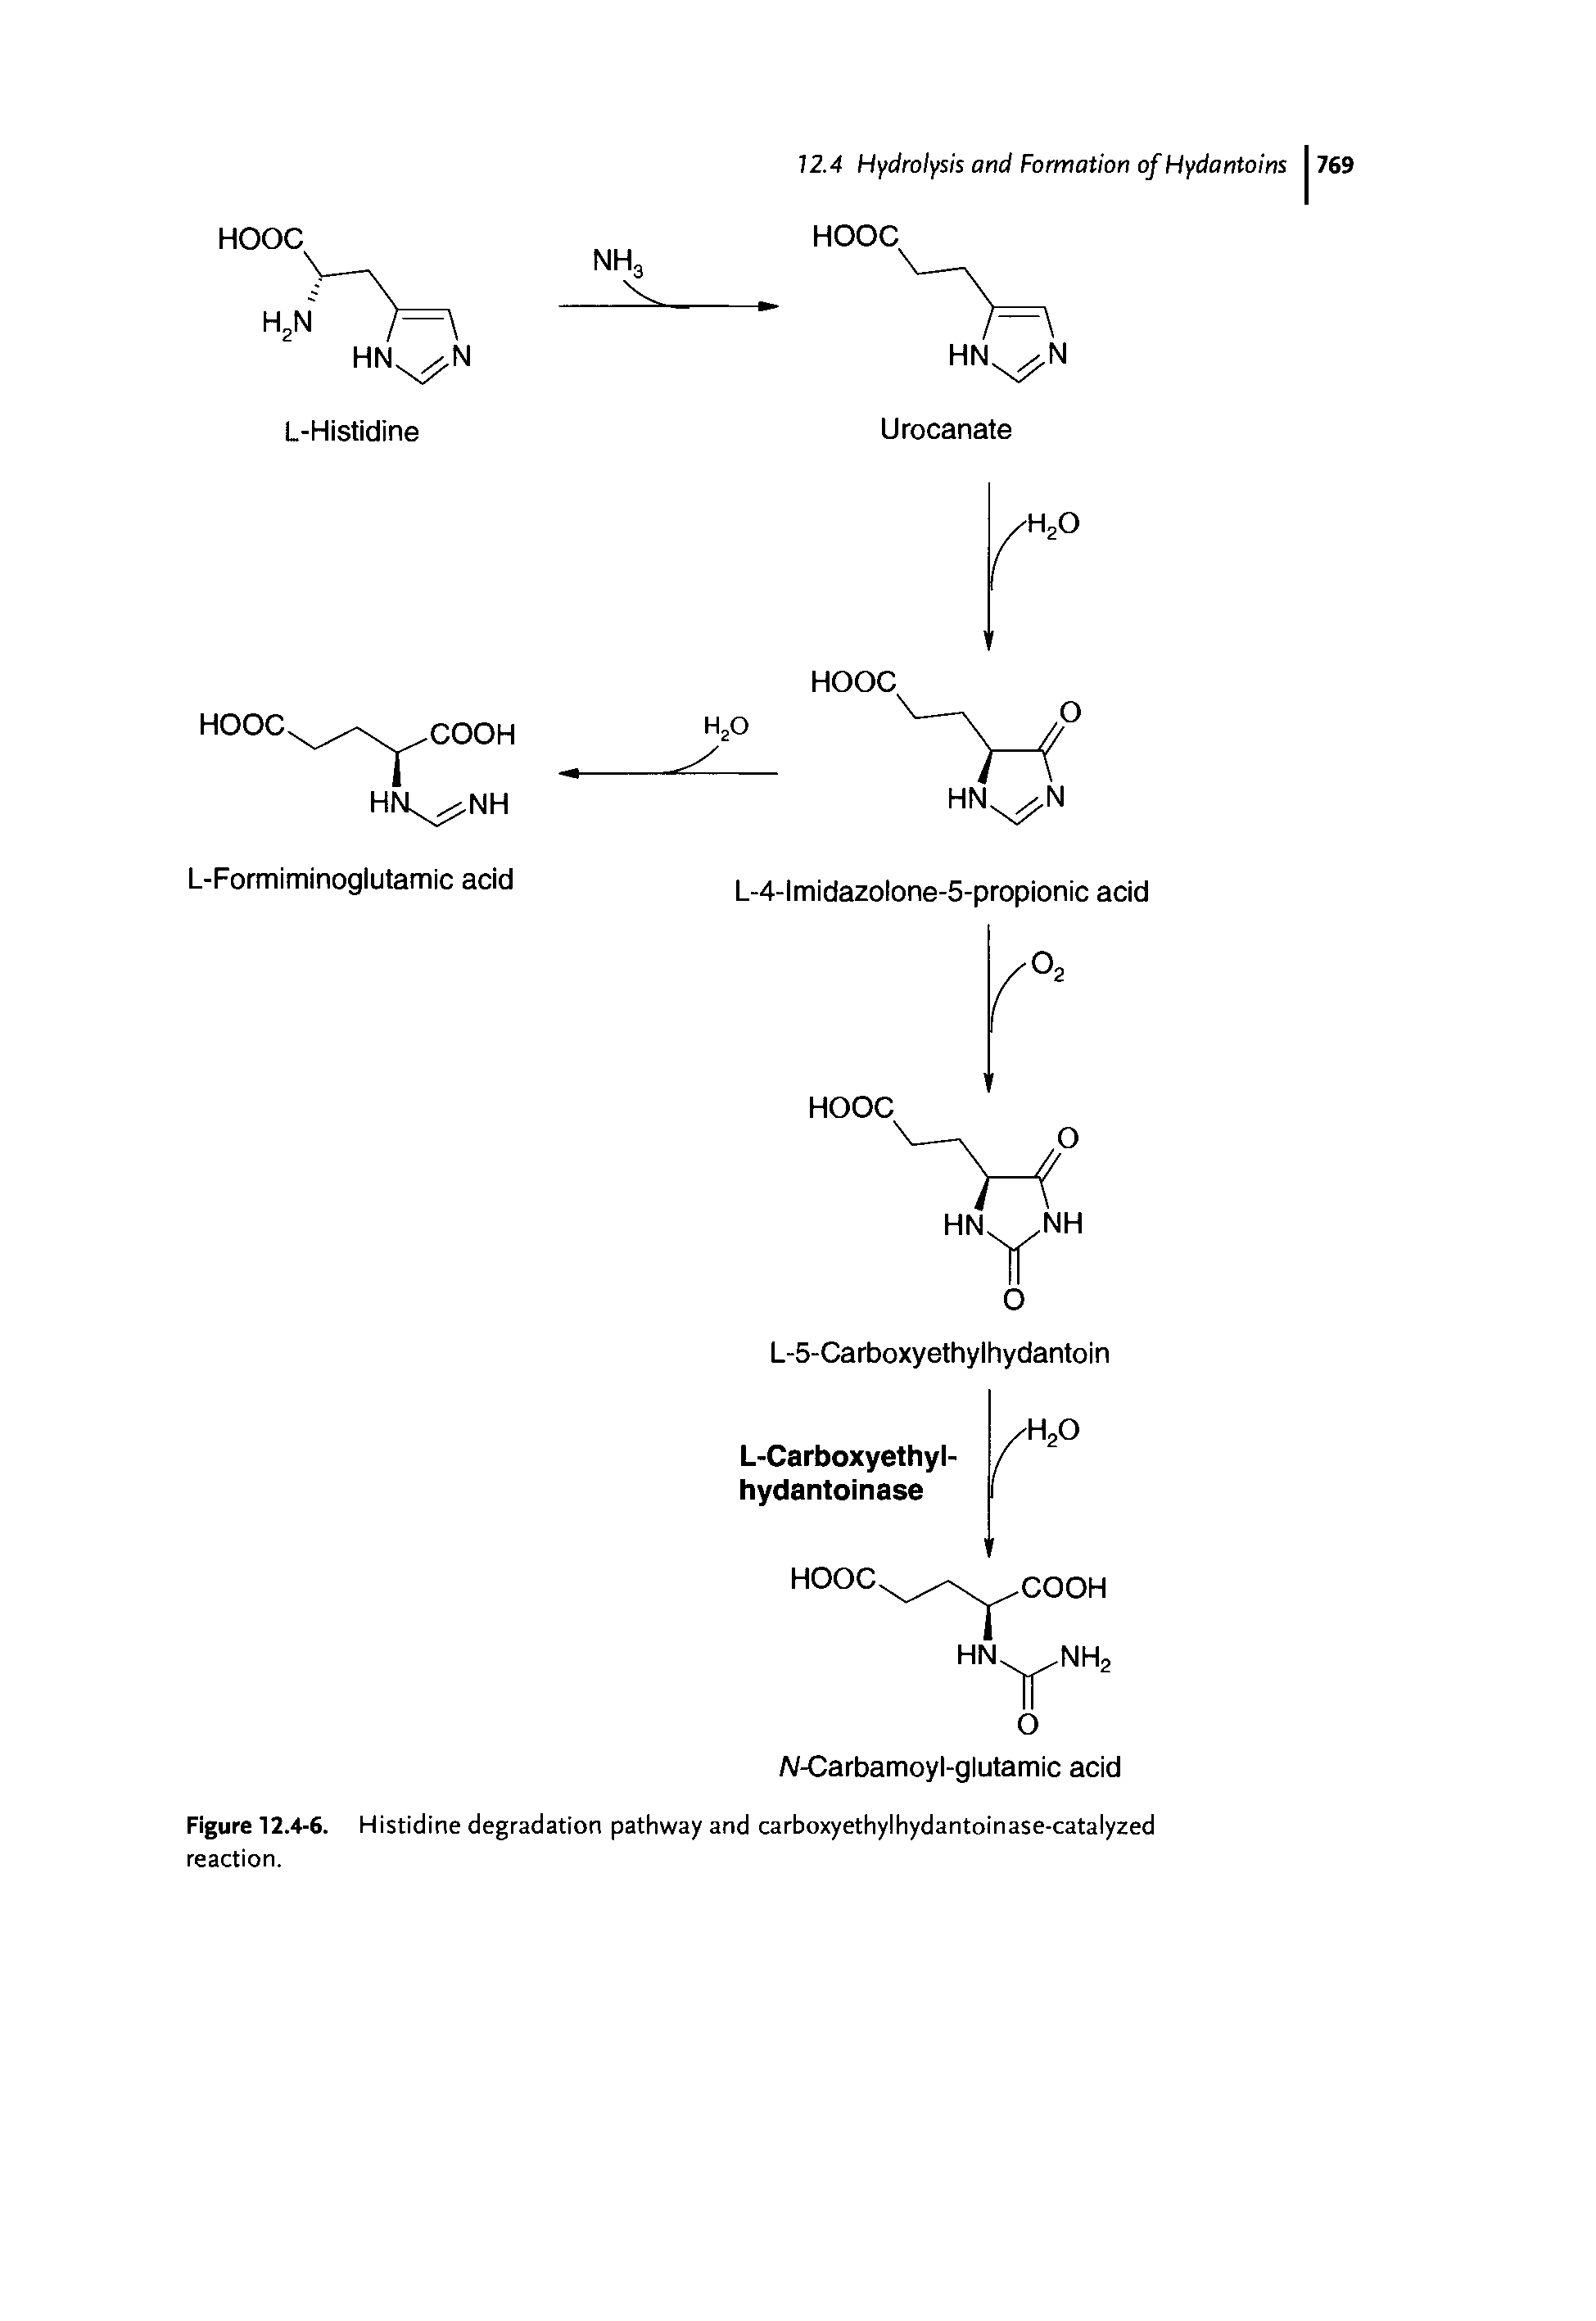 Figure 12.4-6. Histidine degradation pathway and carboxyethylhydantoinase-catalyzed reaction.